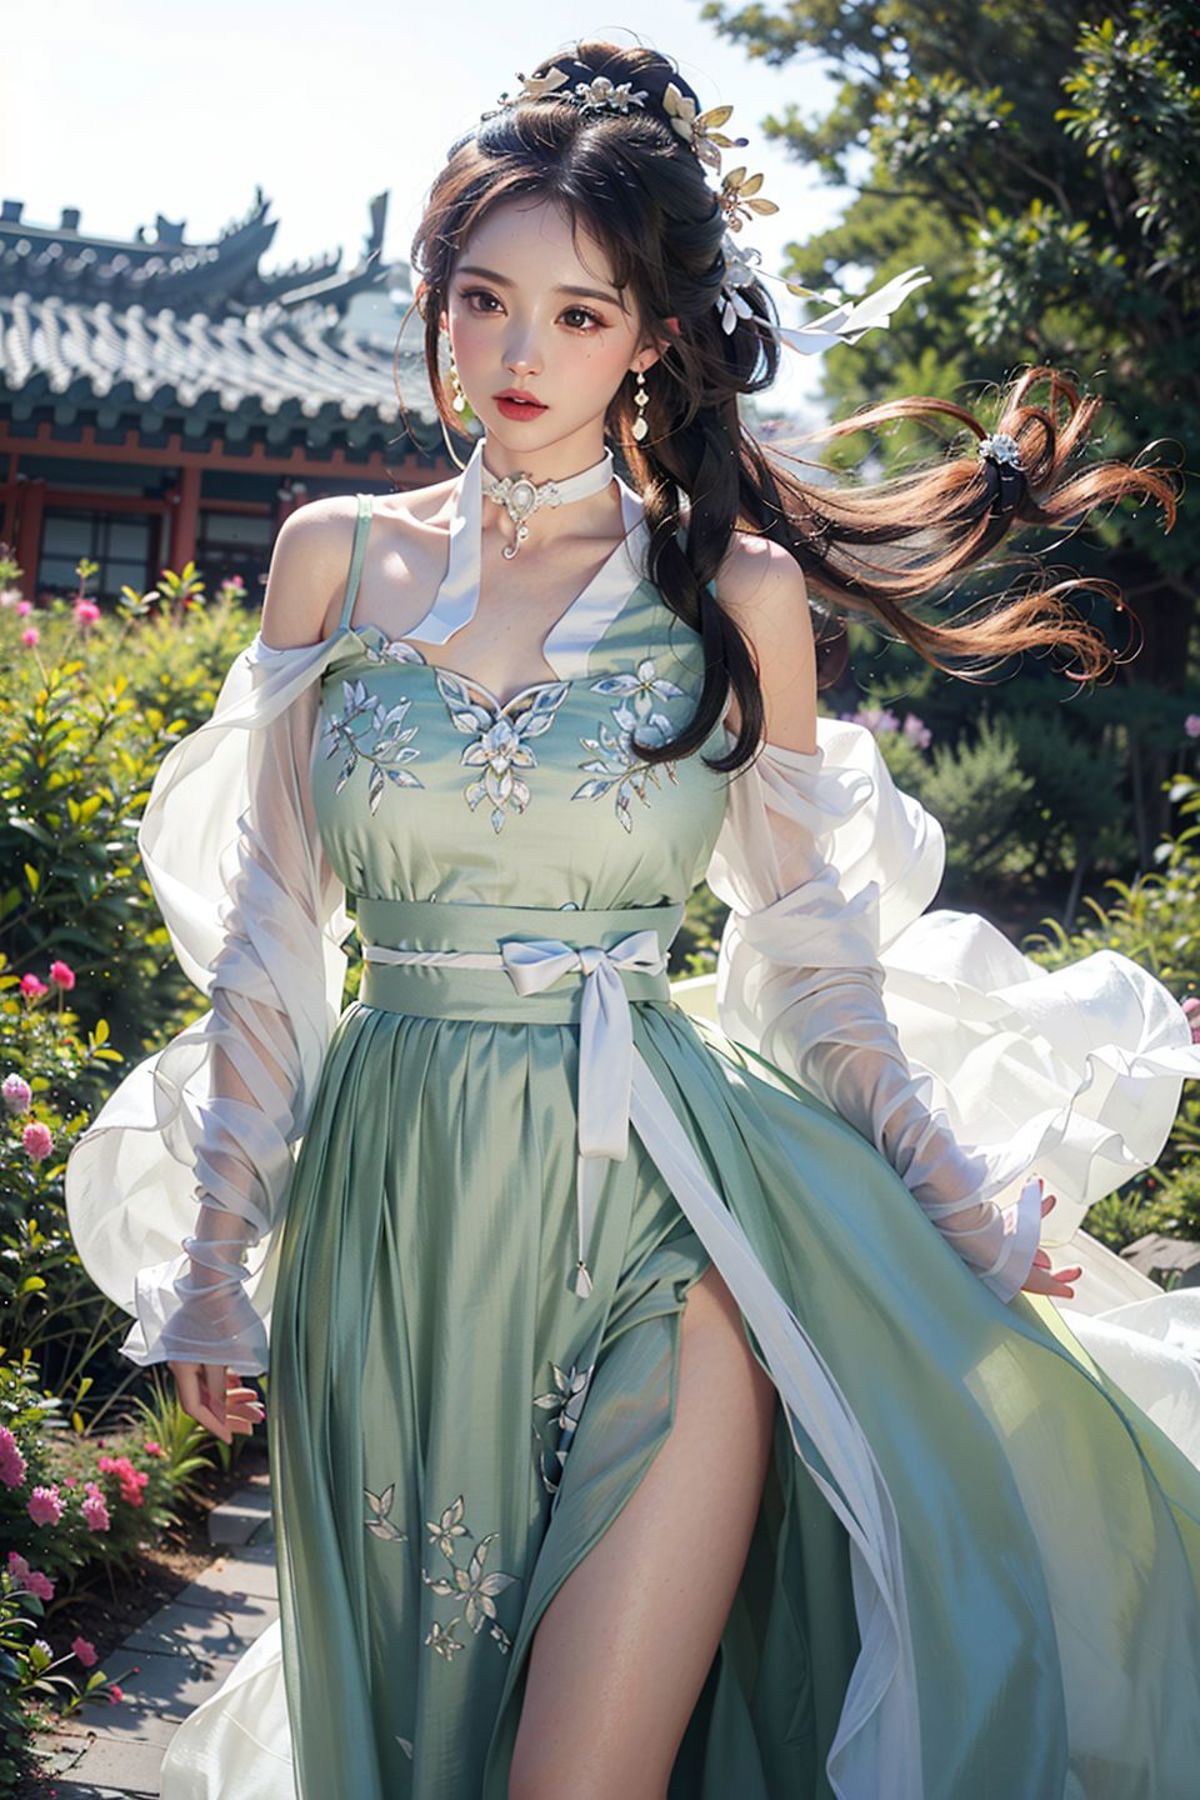 碧玉 | Chinese Clothes image by ylnnn